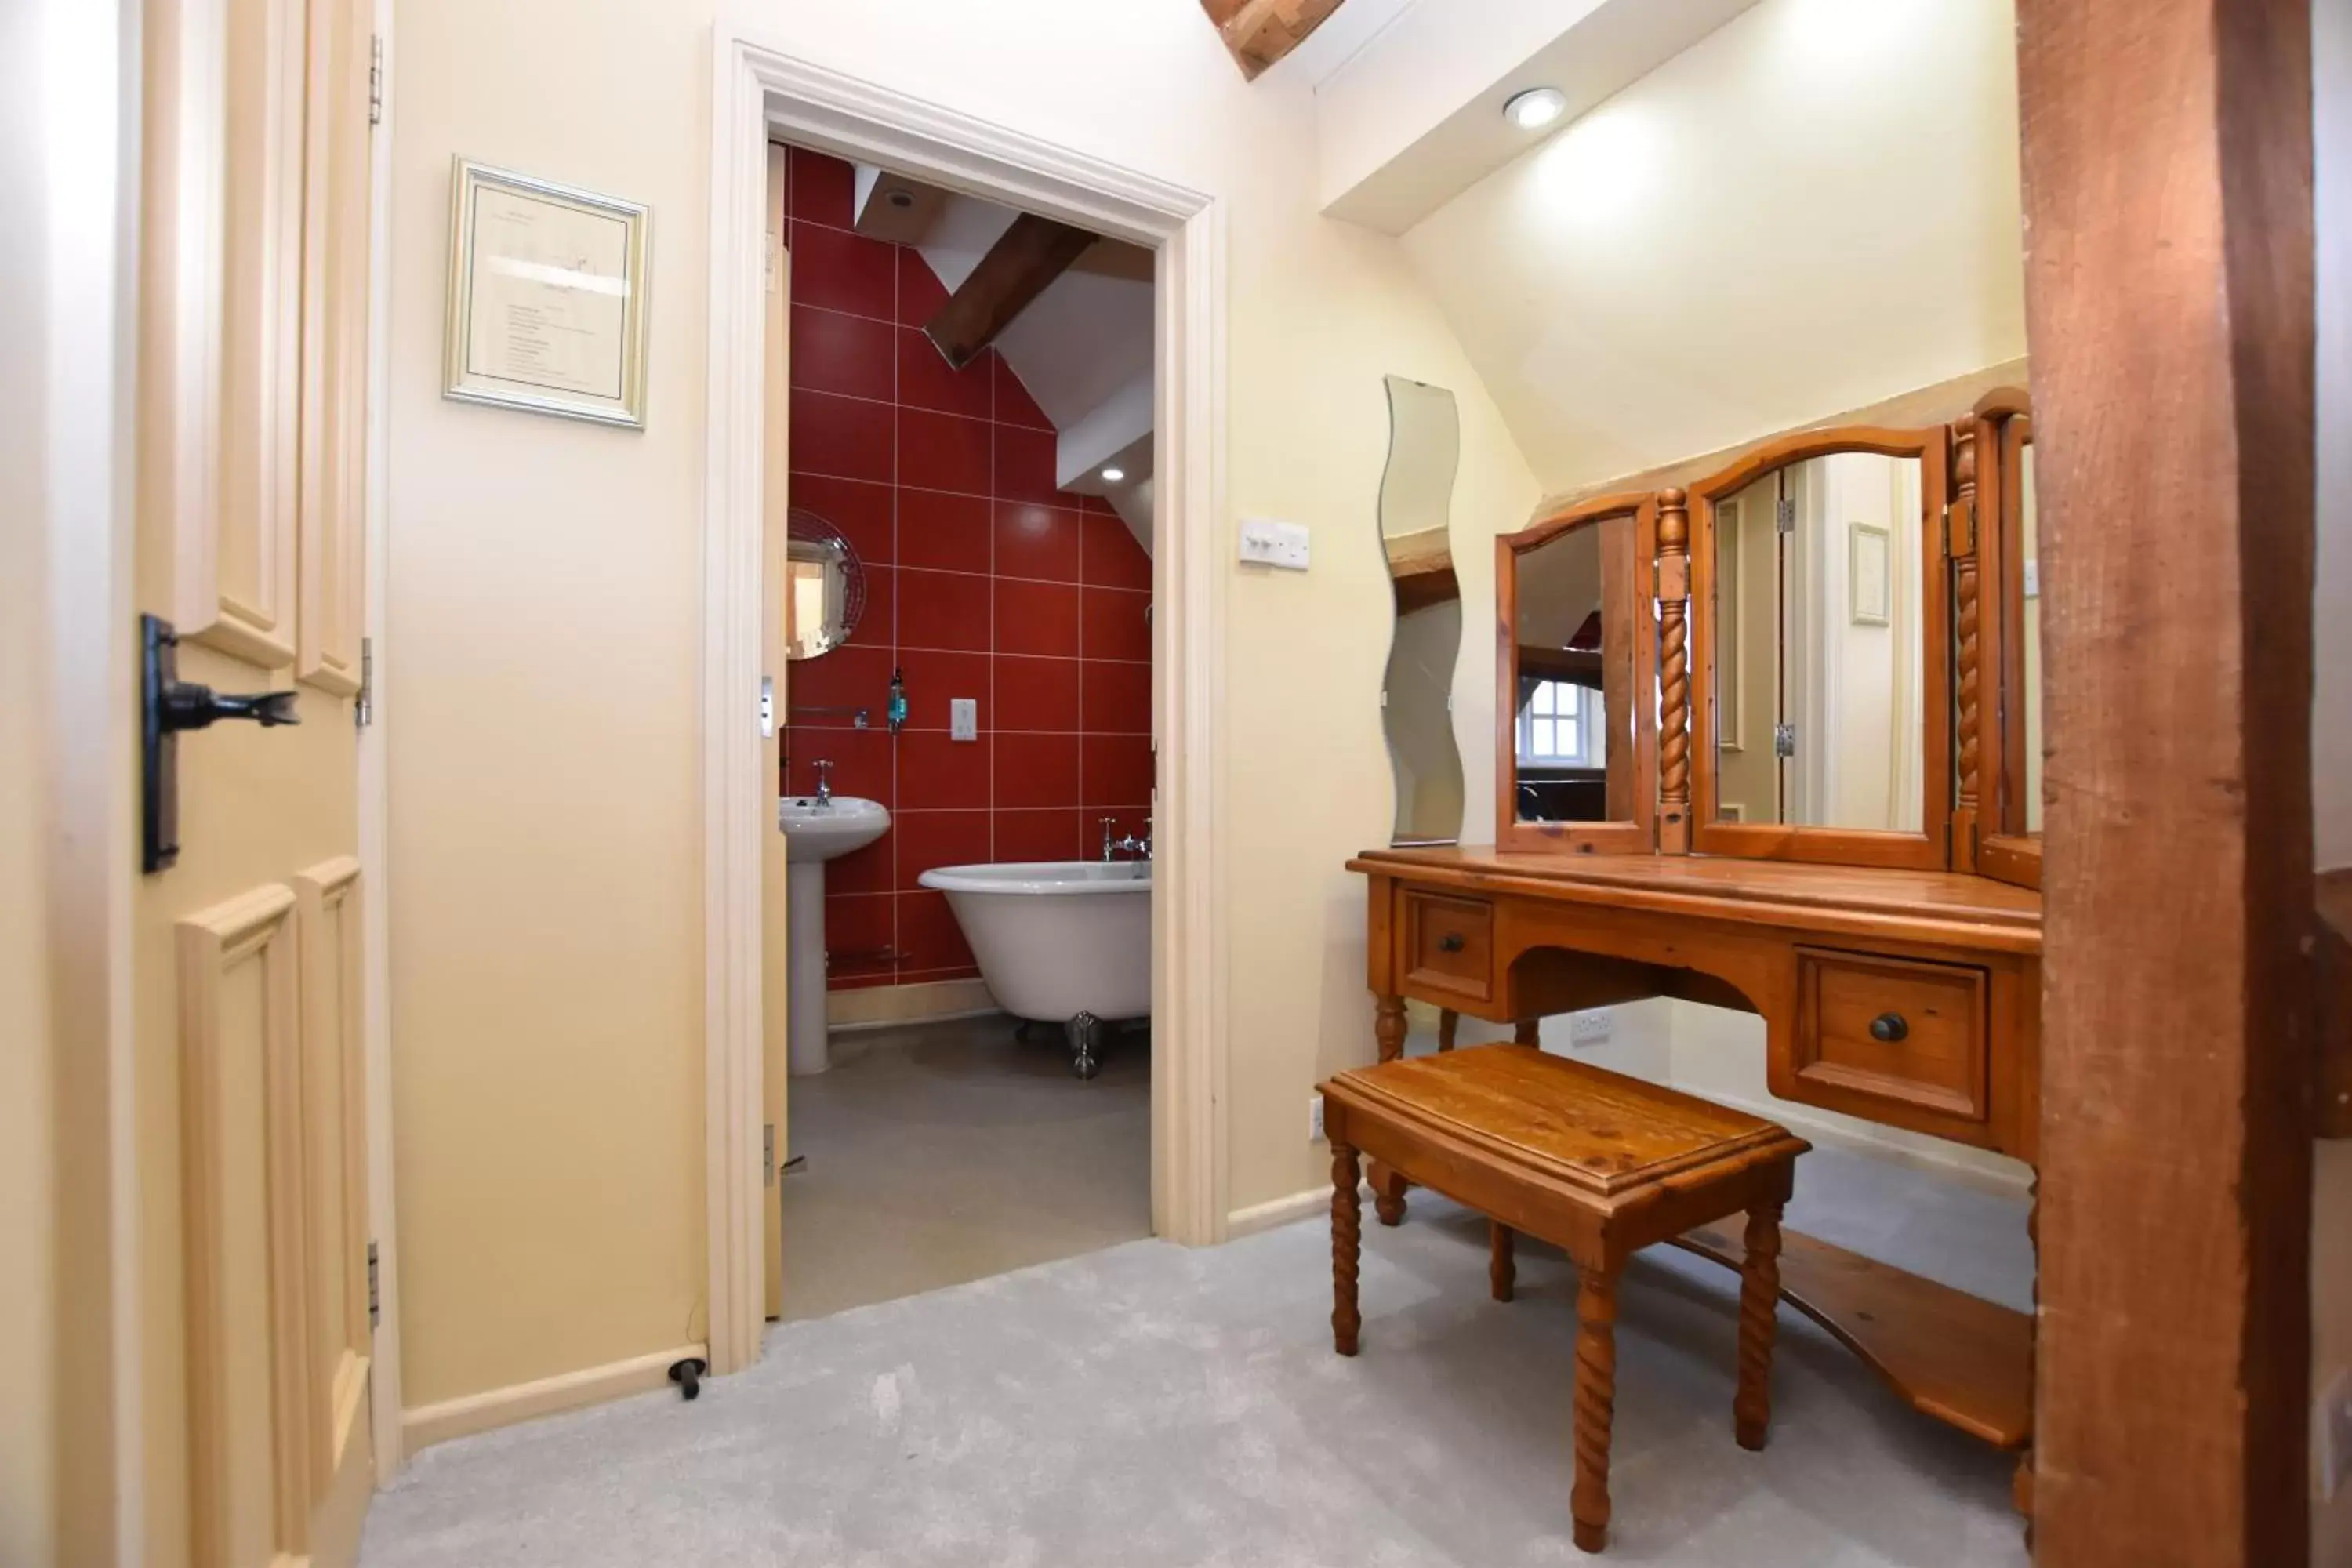 Bedroom, Bathroom in The Halford Bridge Inn